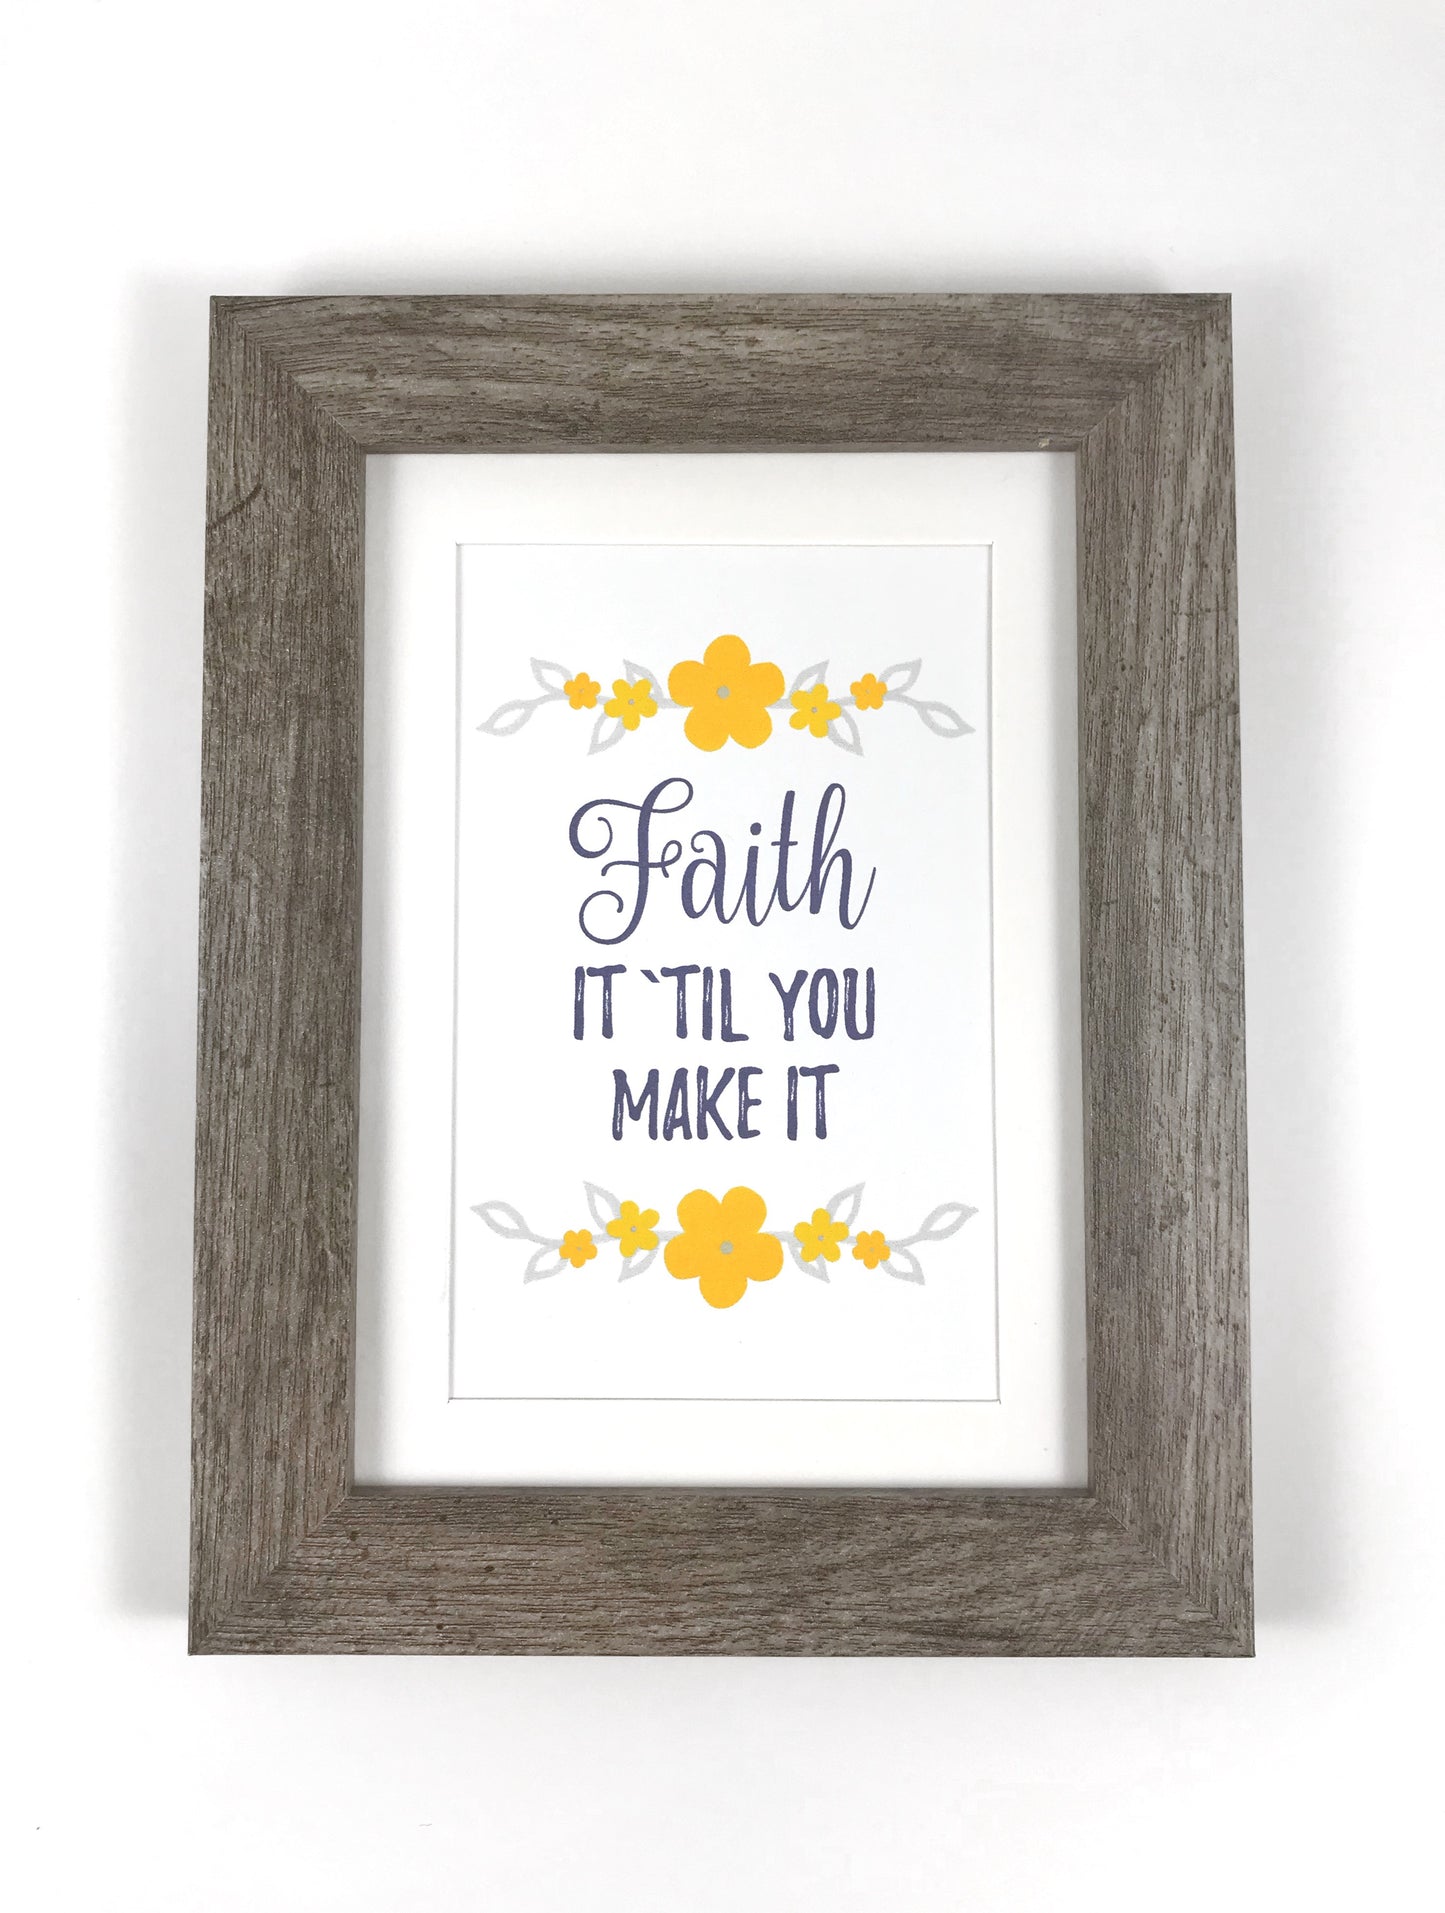 Faith it til you make it Framed Print JW Encouragement Gift by Olive Branch Design Studio 